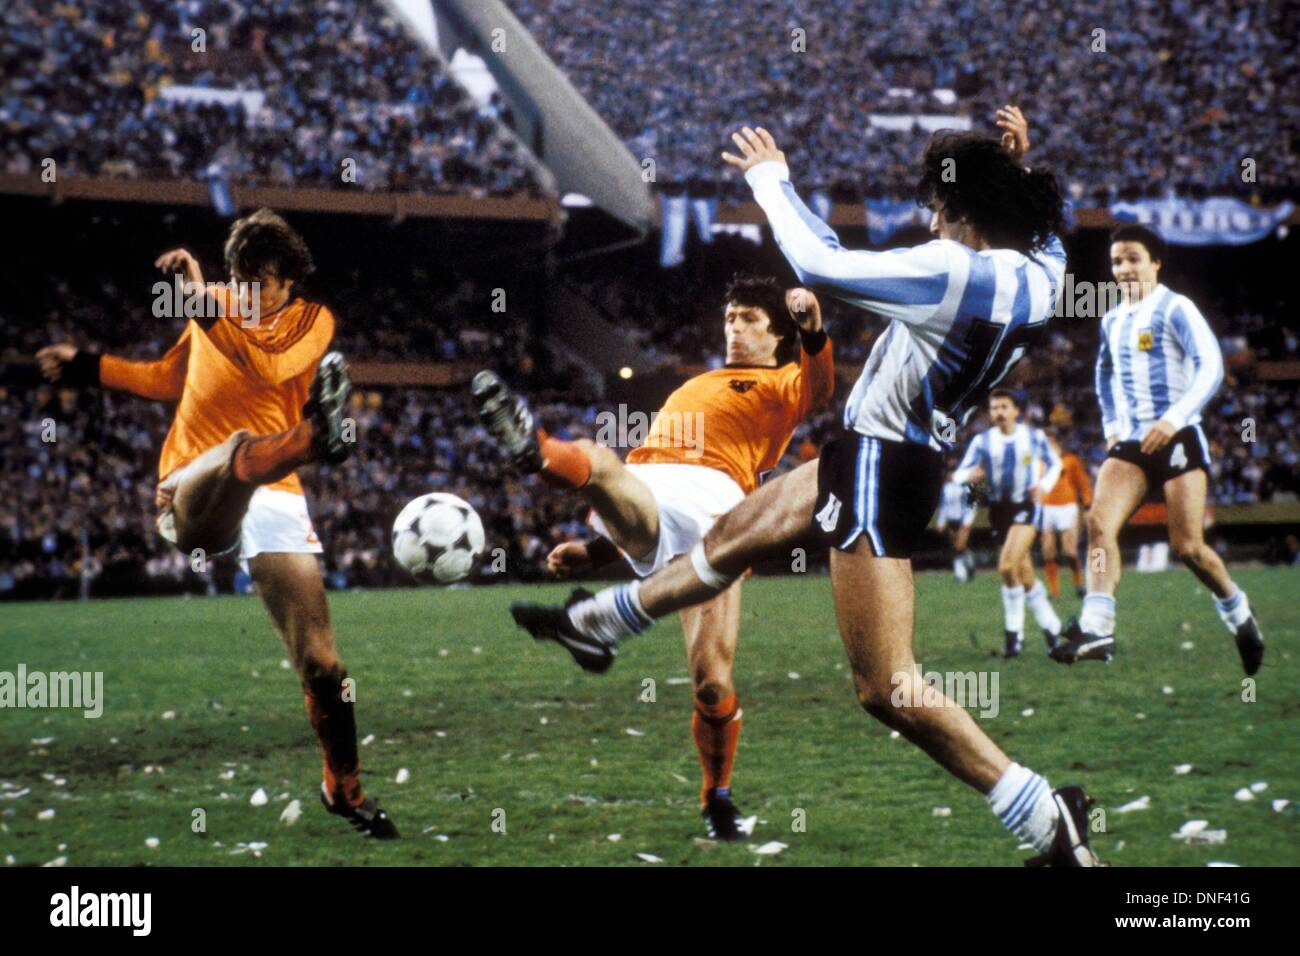 25.06.1978 Buenos Aires Argentina. Jan Poortvliet (Olanda) e Wim Suurbier (Olanda) sfidano Mario Kempes (Argentina) Coppa del mondo 1978. L'Argentina contro l'Olanda ha concluso 3:1 Foto Stock